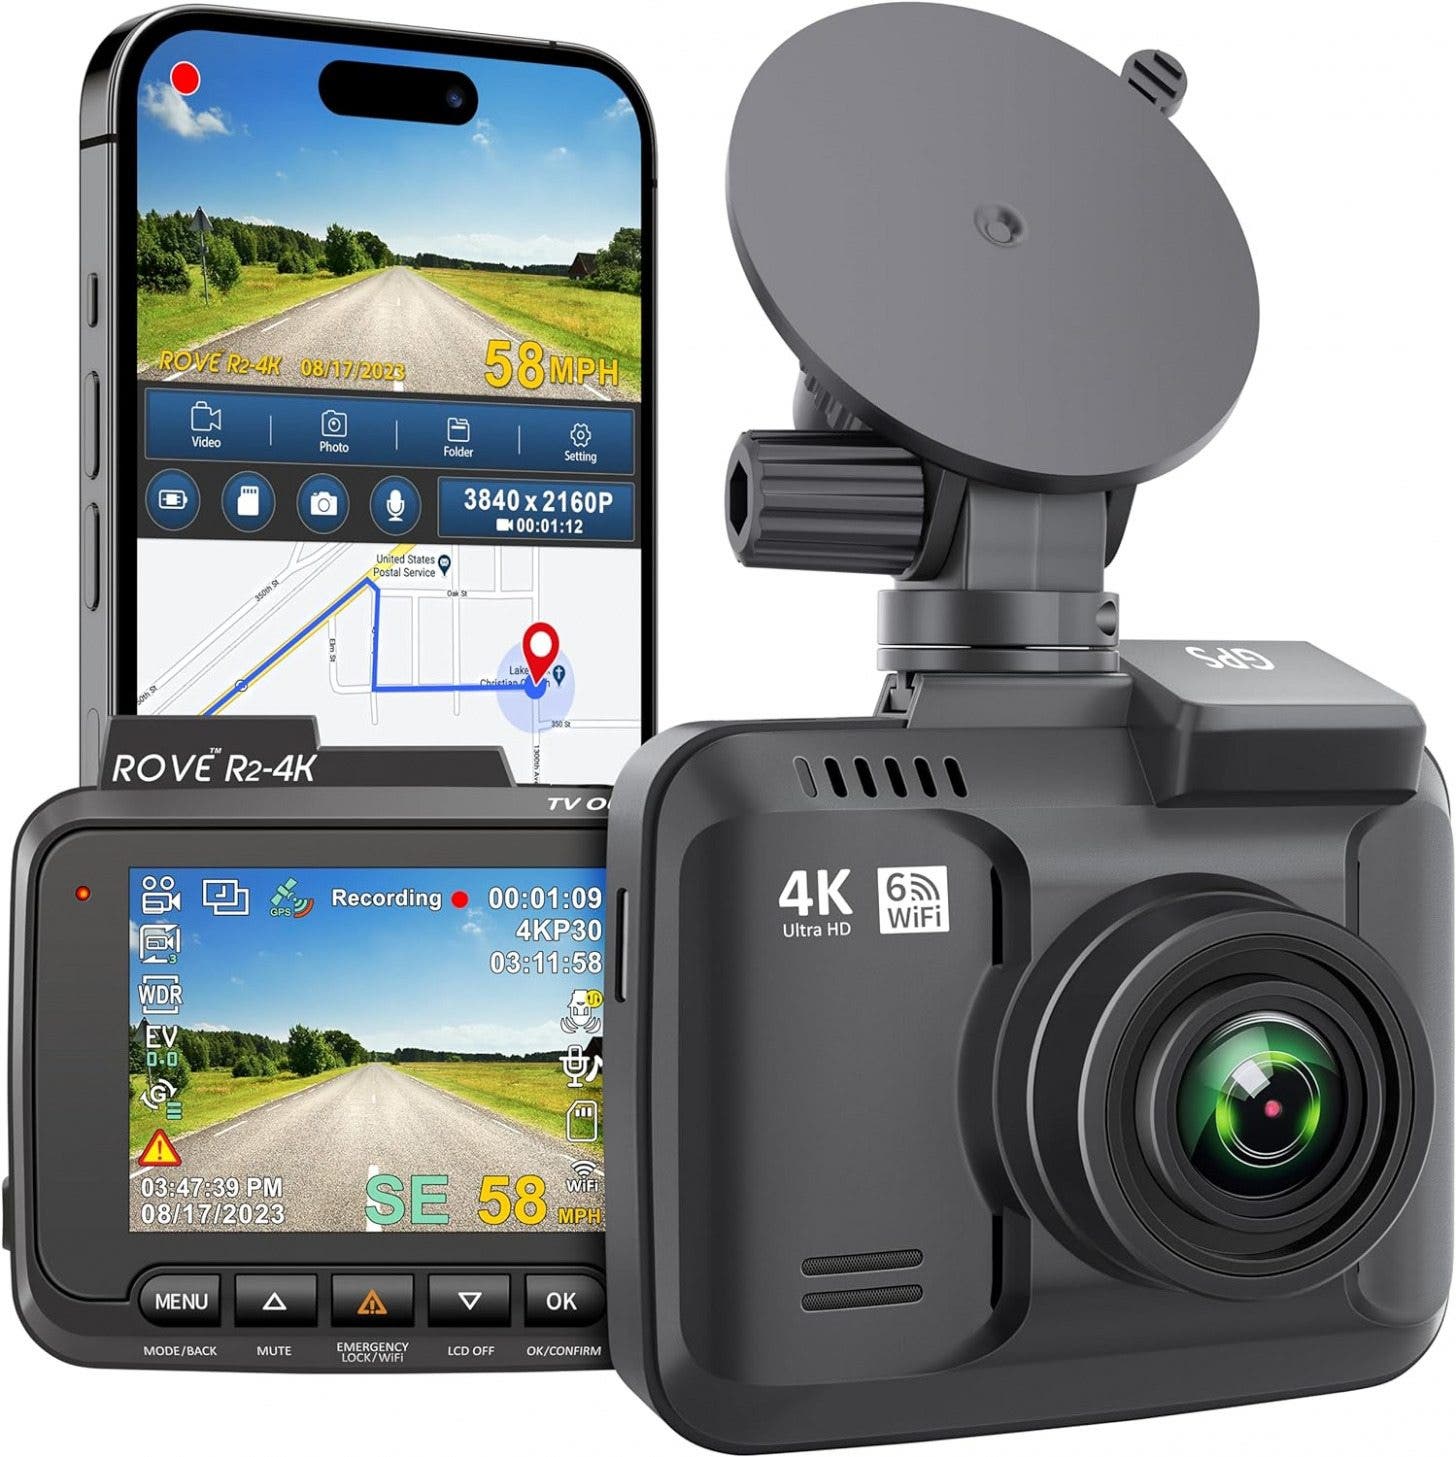 Rove R2-4K Dash Cam con WiFi y GPS integrados (19.99)